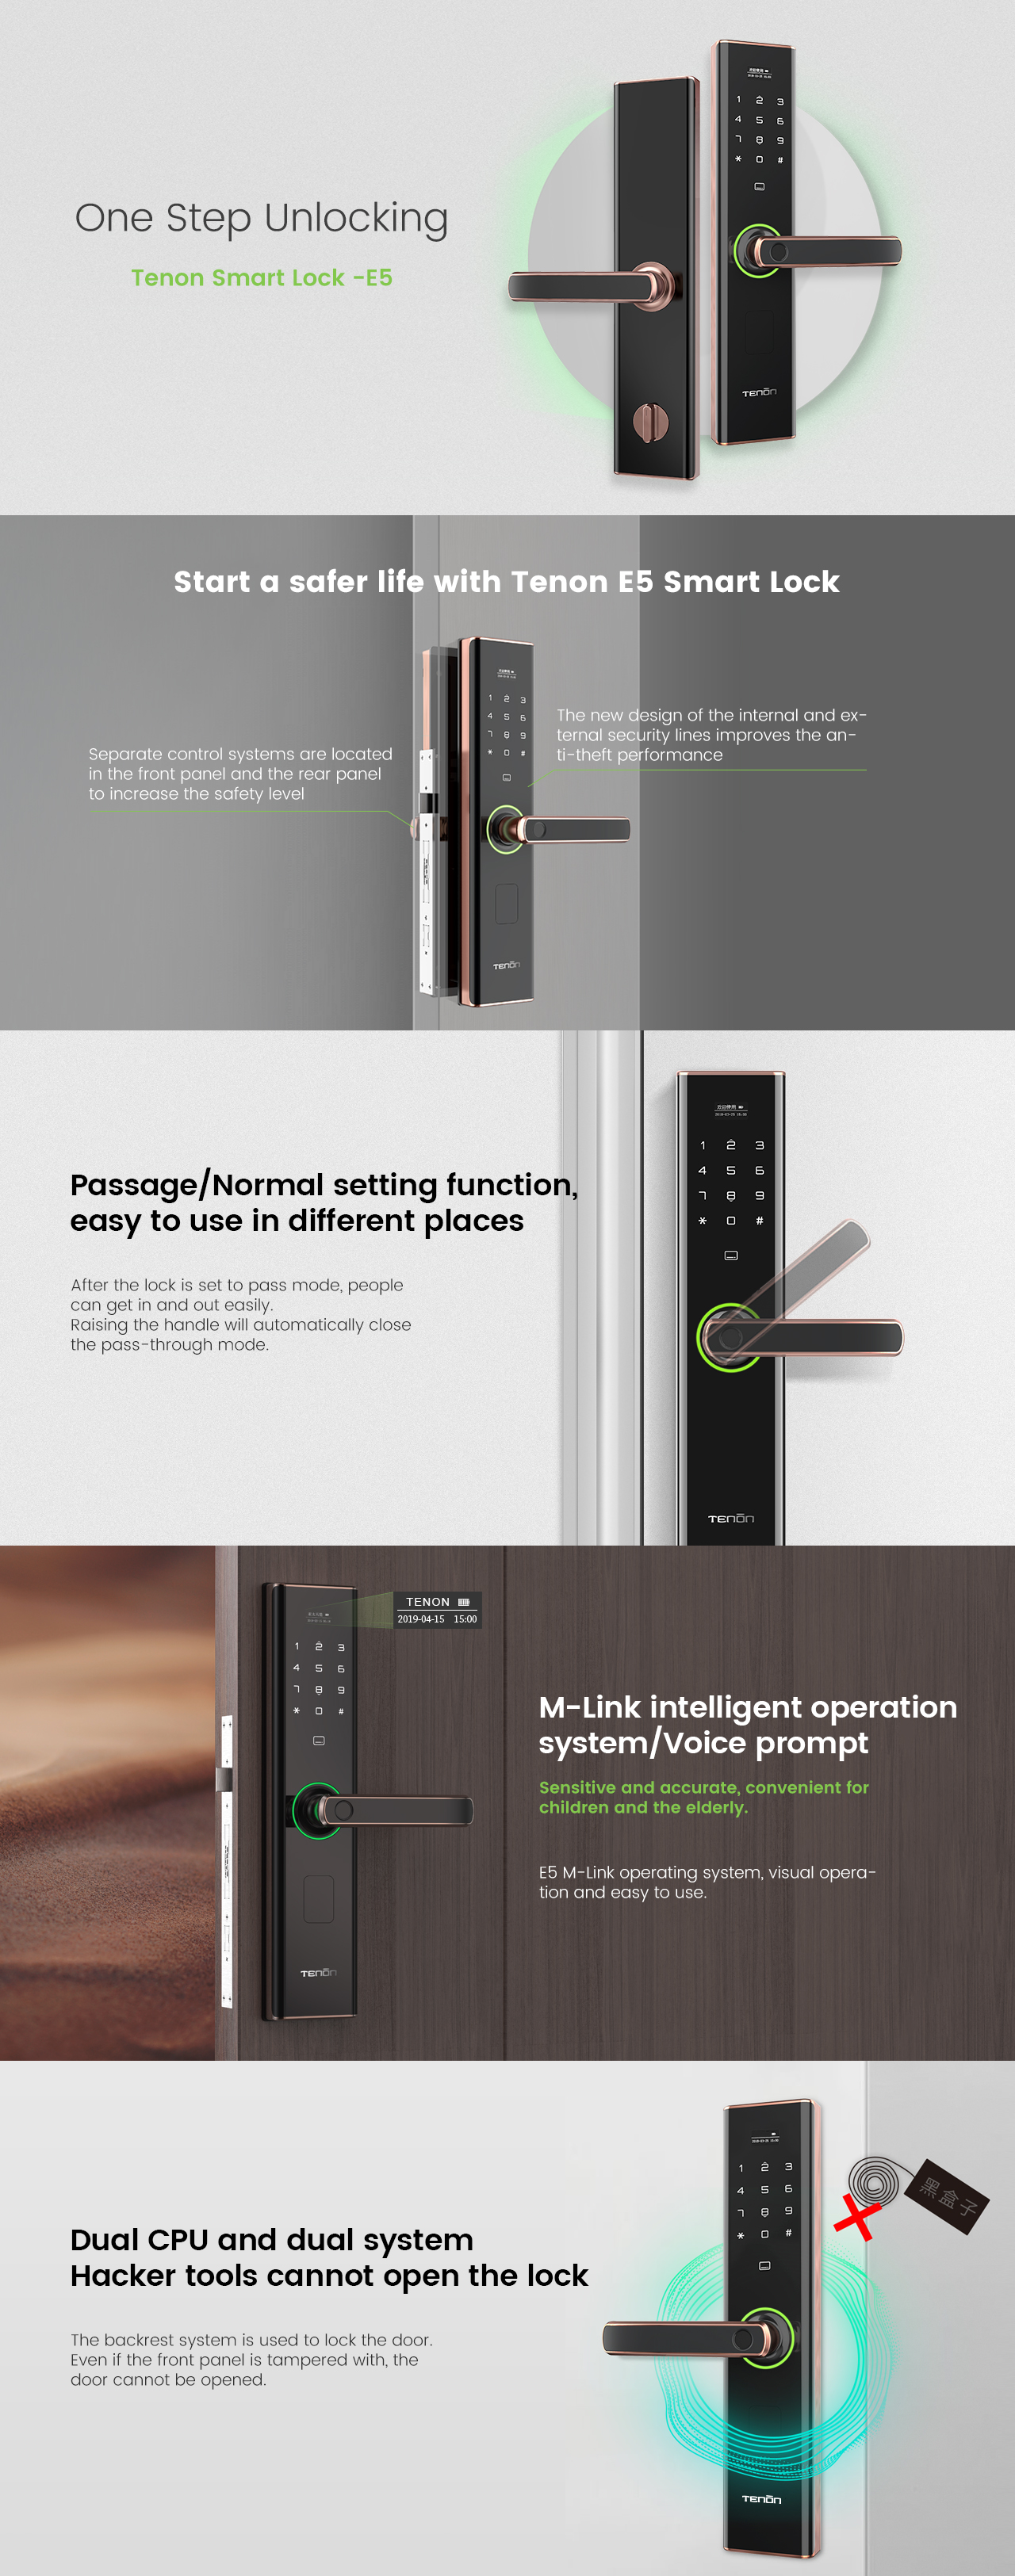 Detalles de la cerradura de la barra inteligente de la placa táctil de huella digital electrónica sin llave